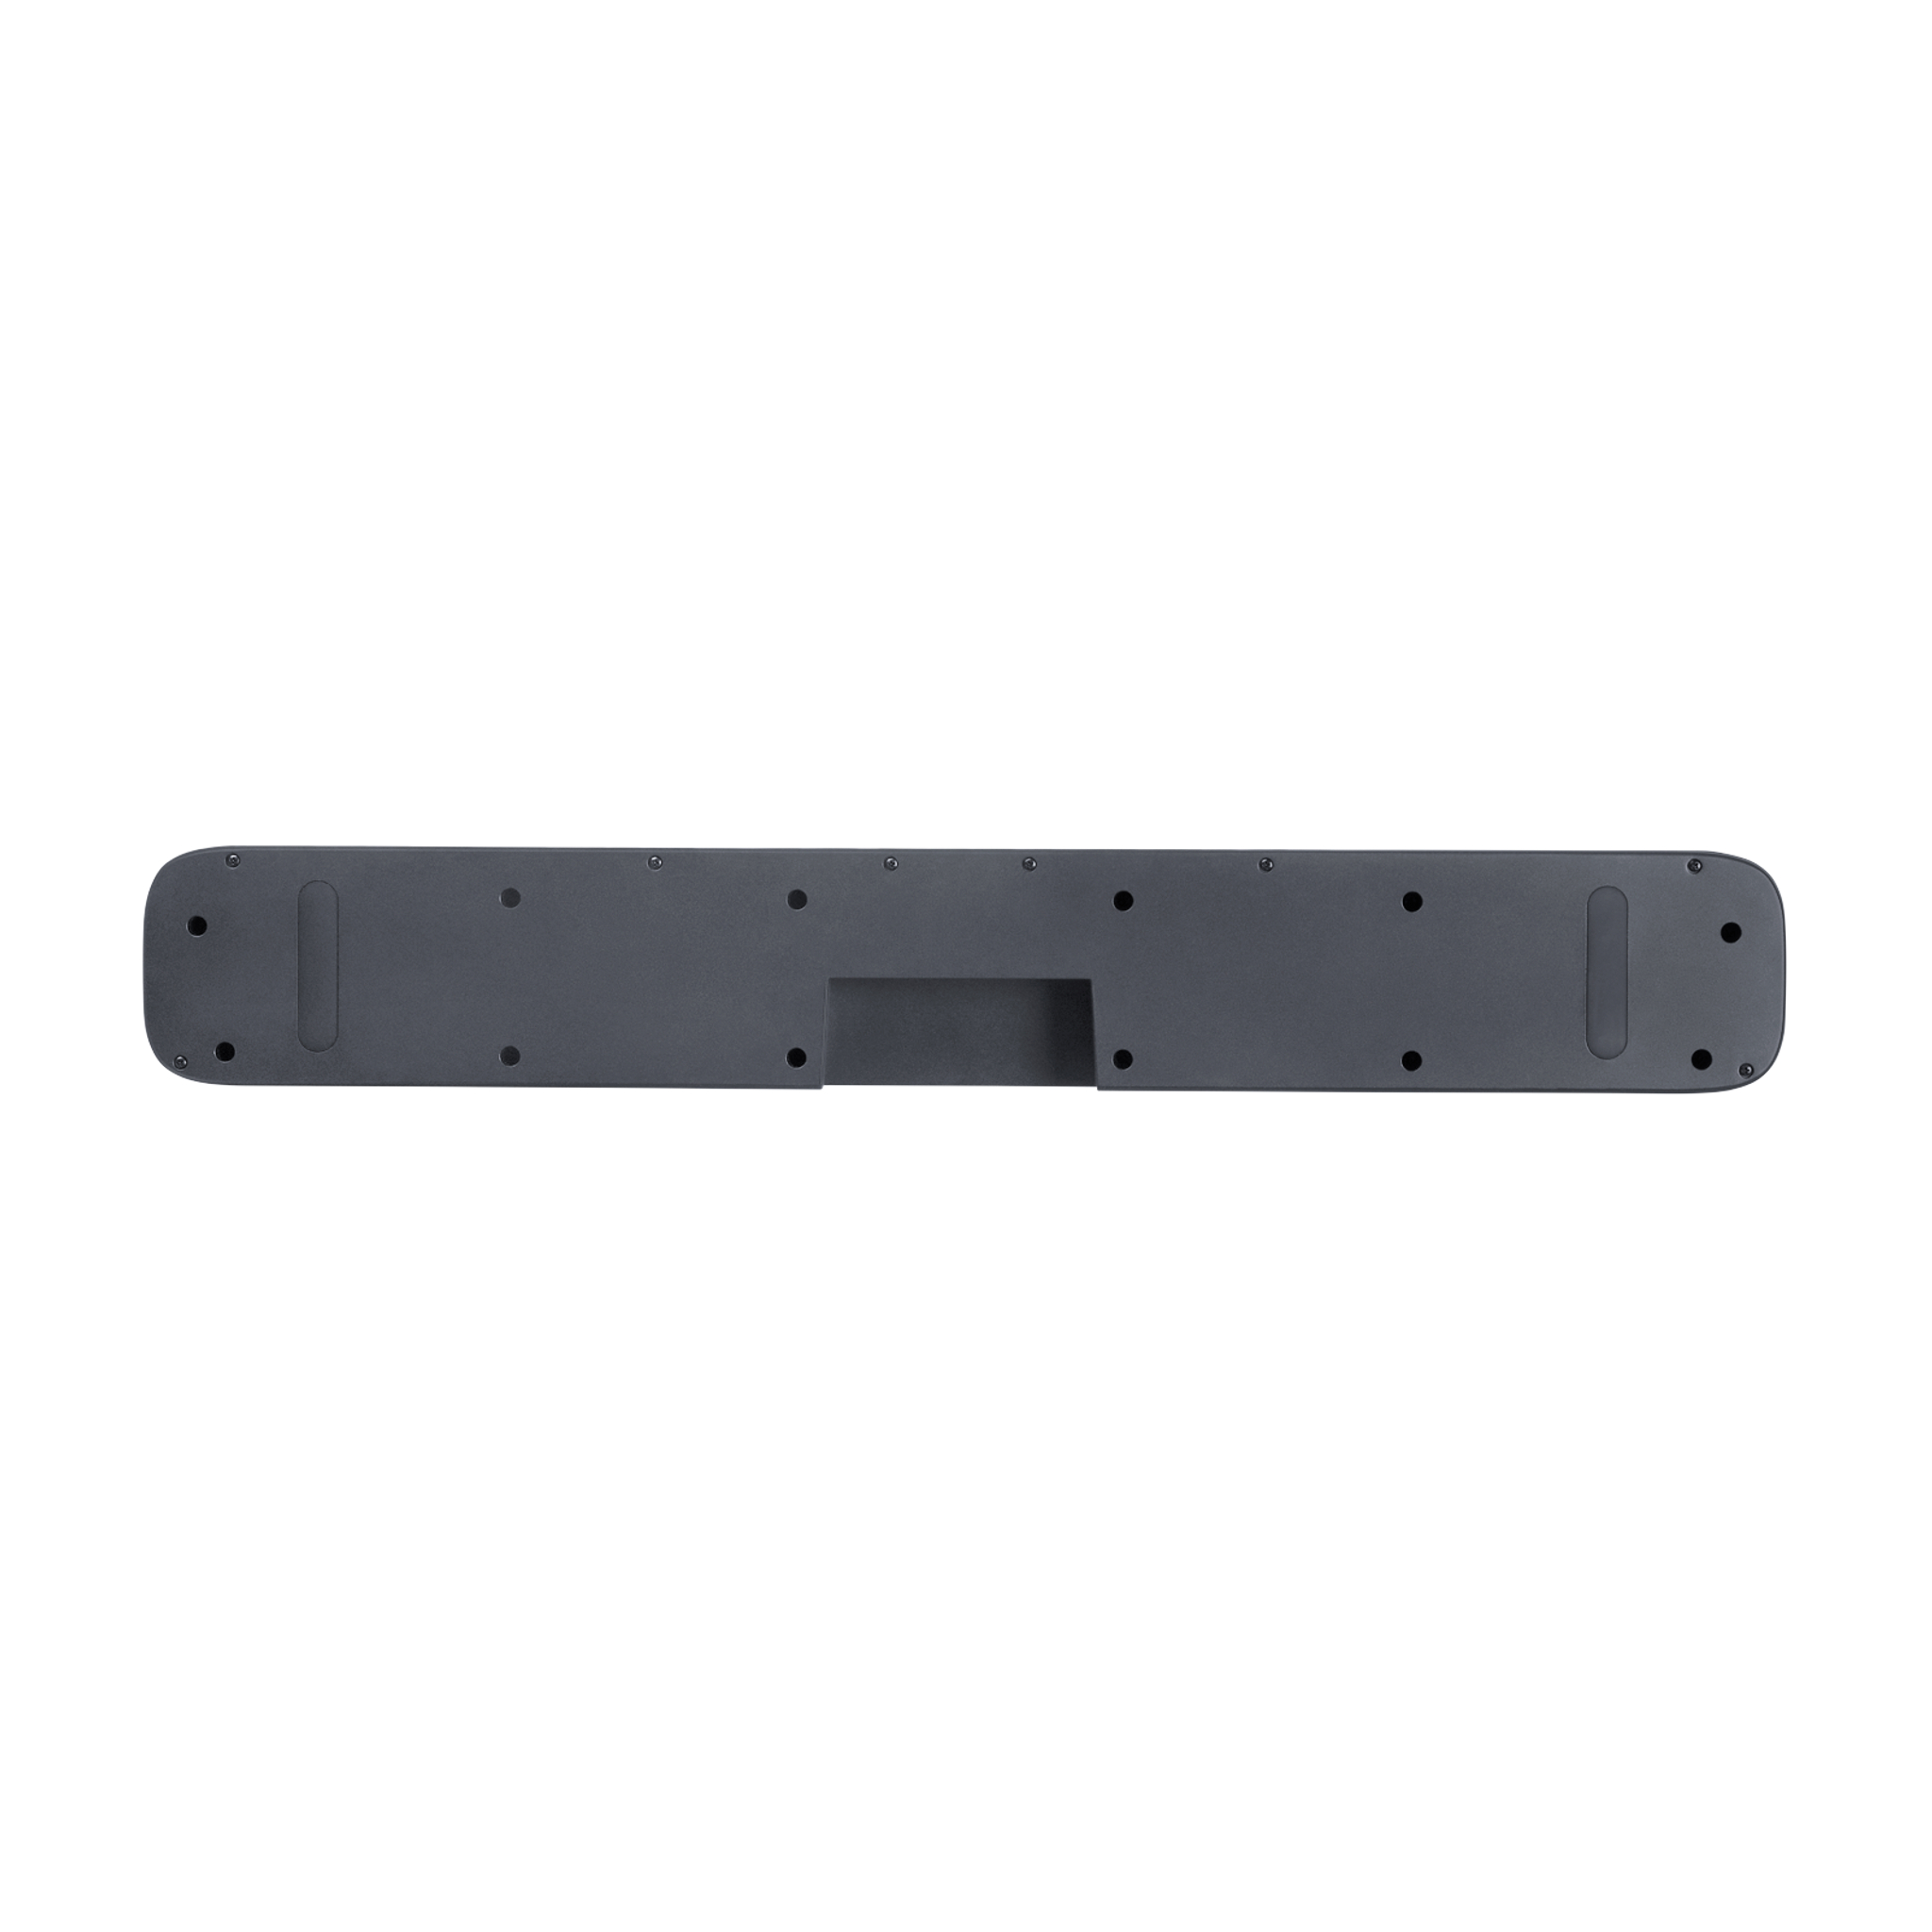 JBL Bar 2.0 All-in-one (MK2) - Compact Soundbar - Dolby Digital